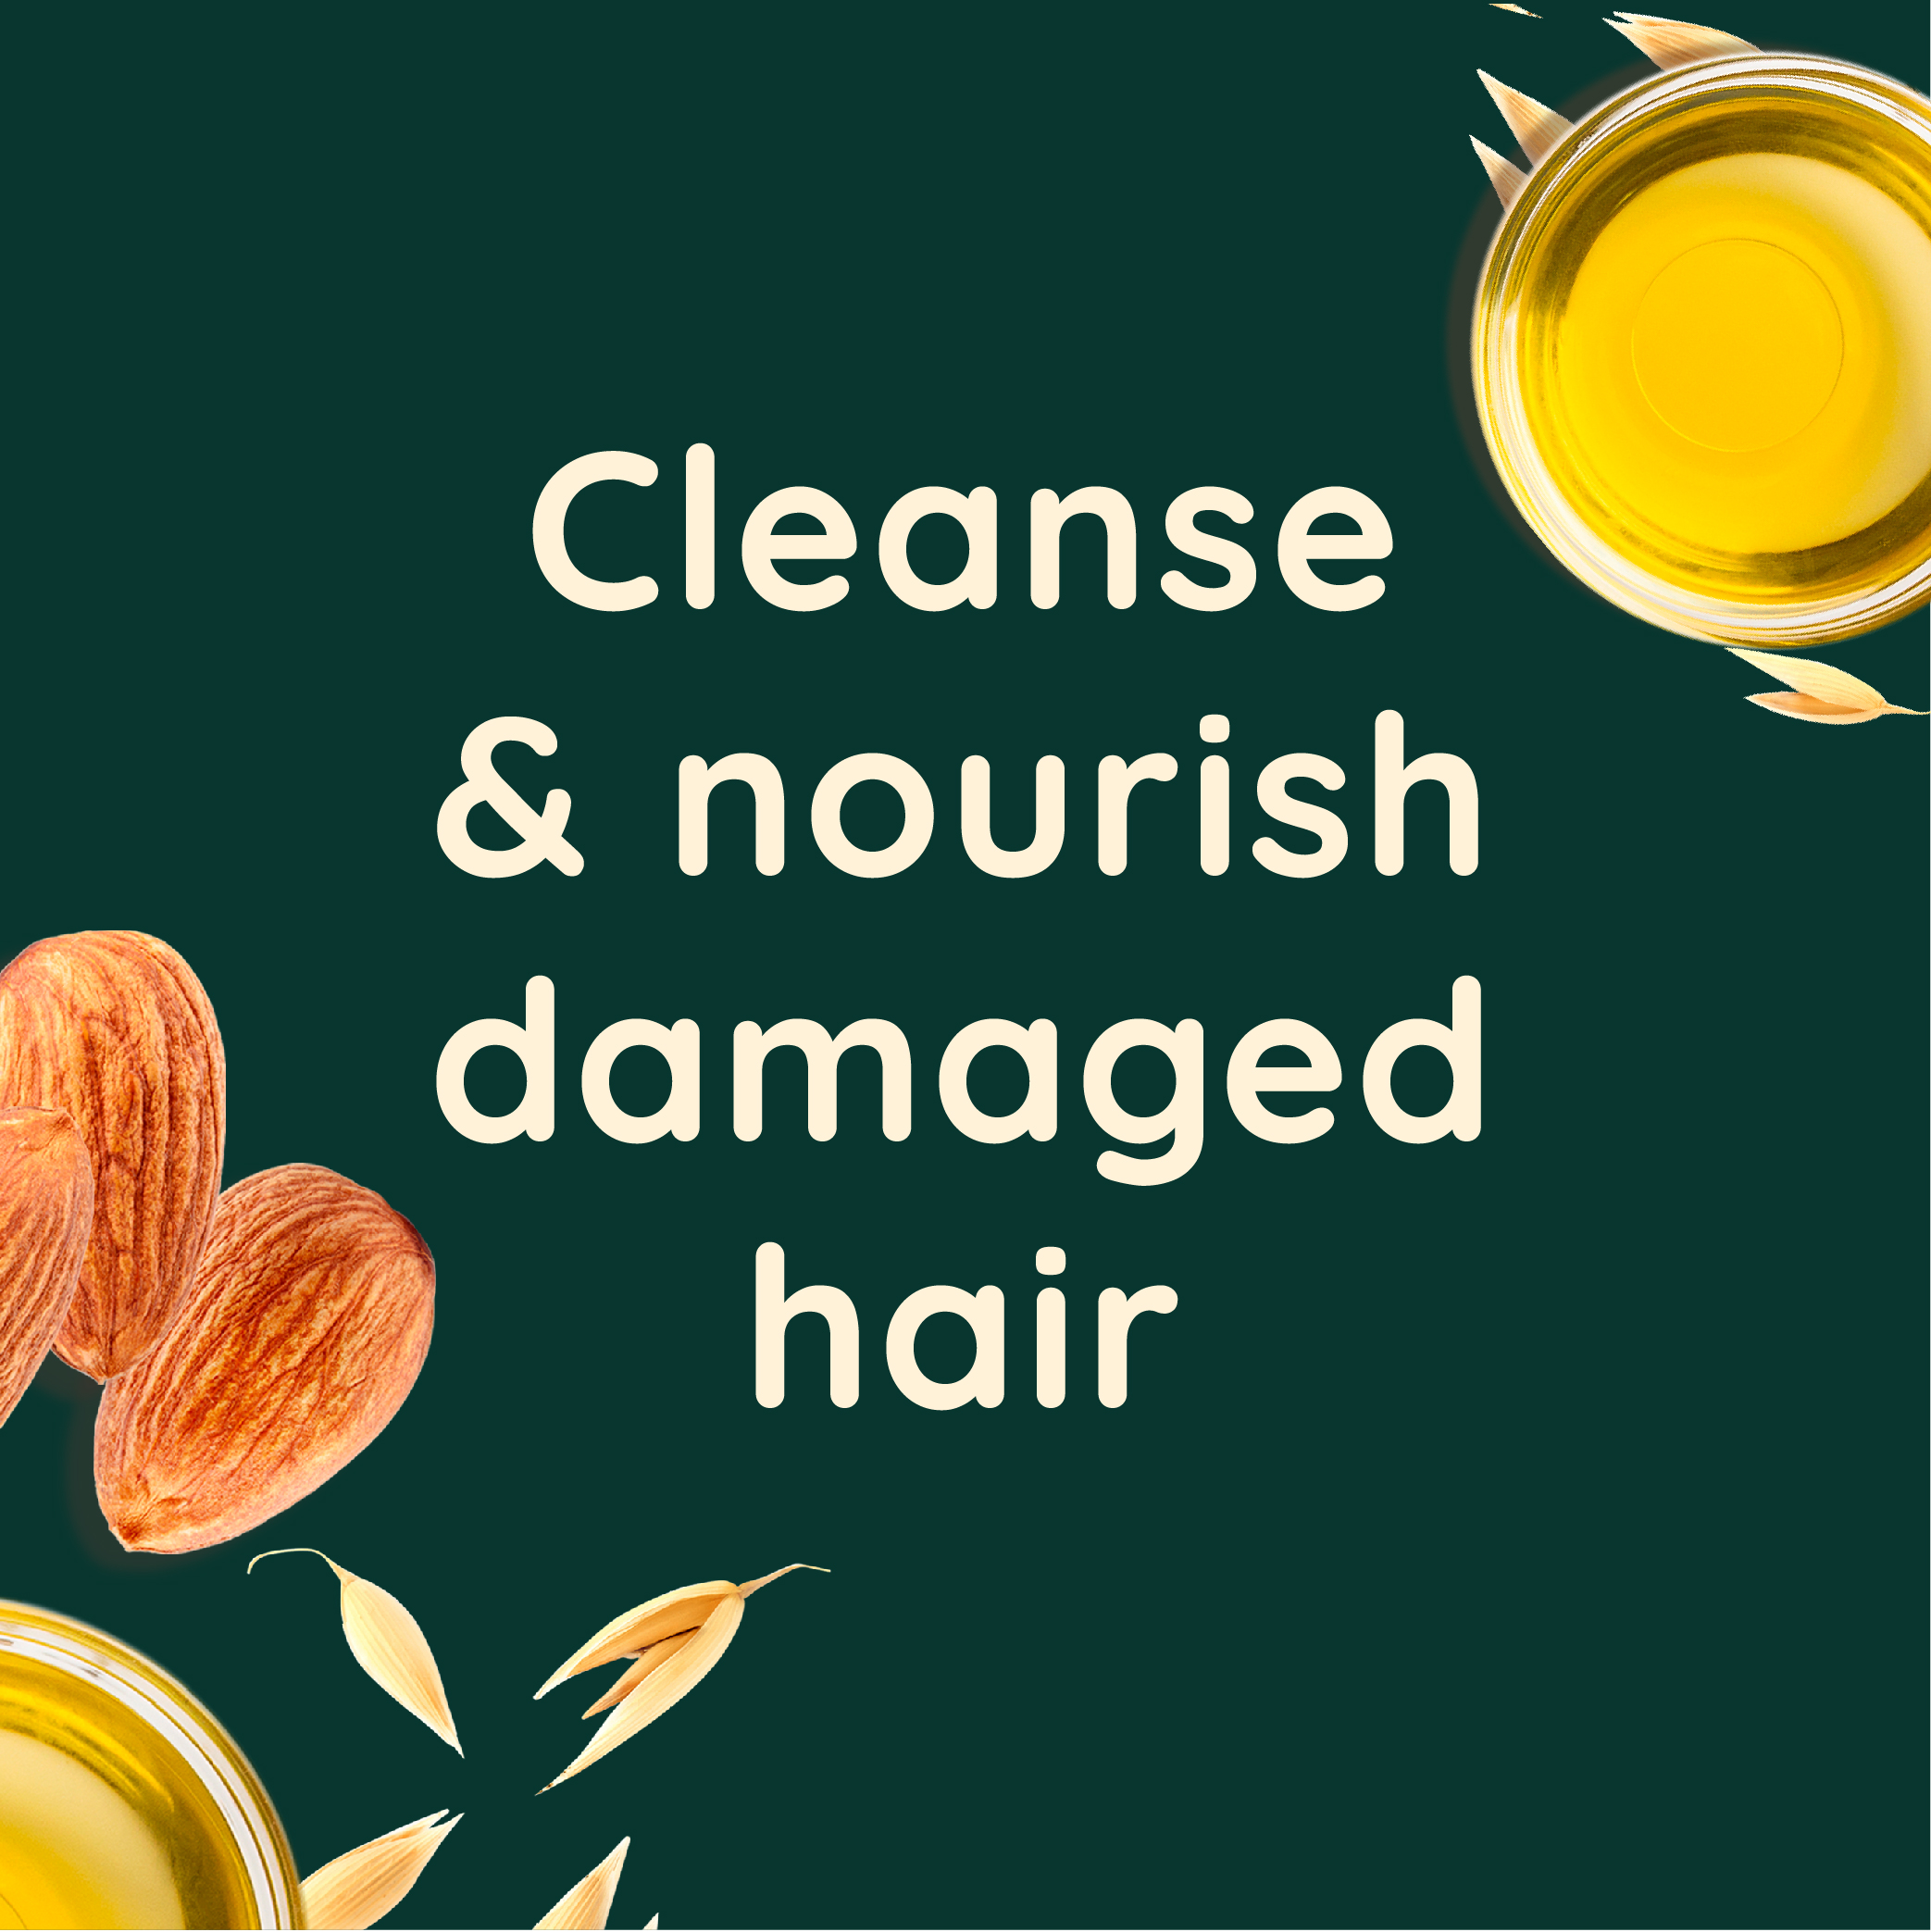 Cleanse & nourish damaged hair